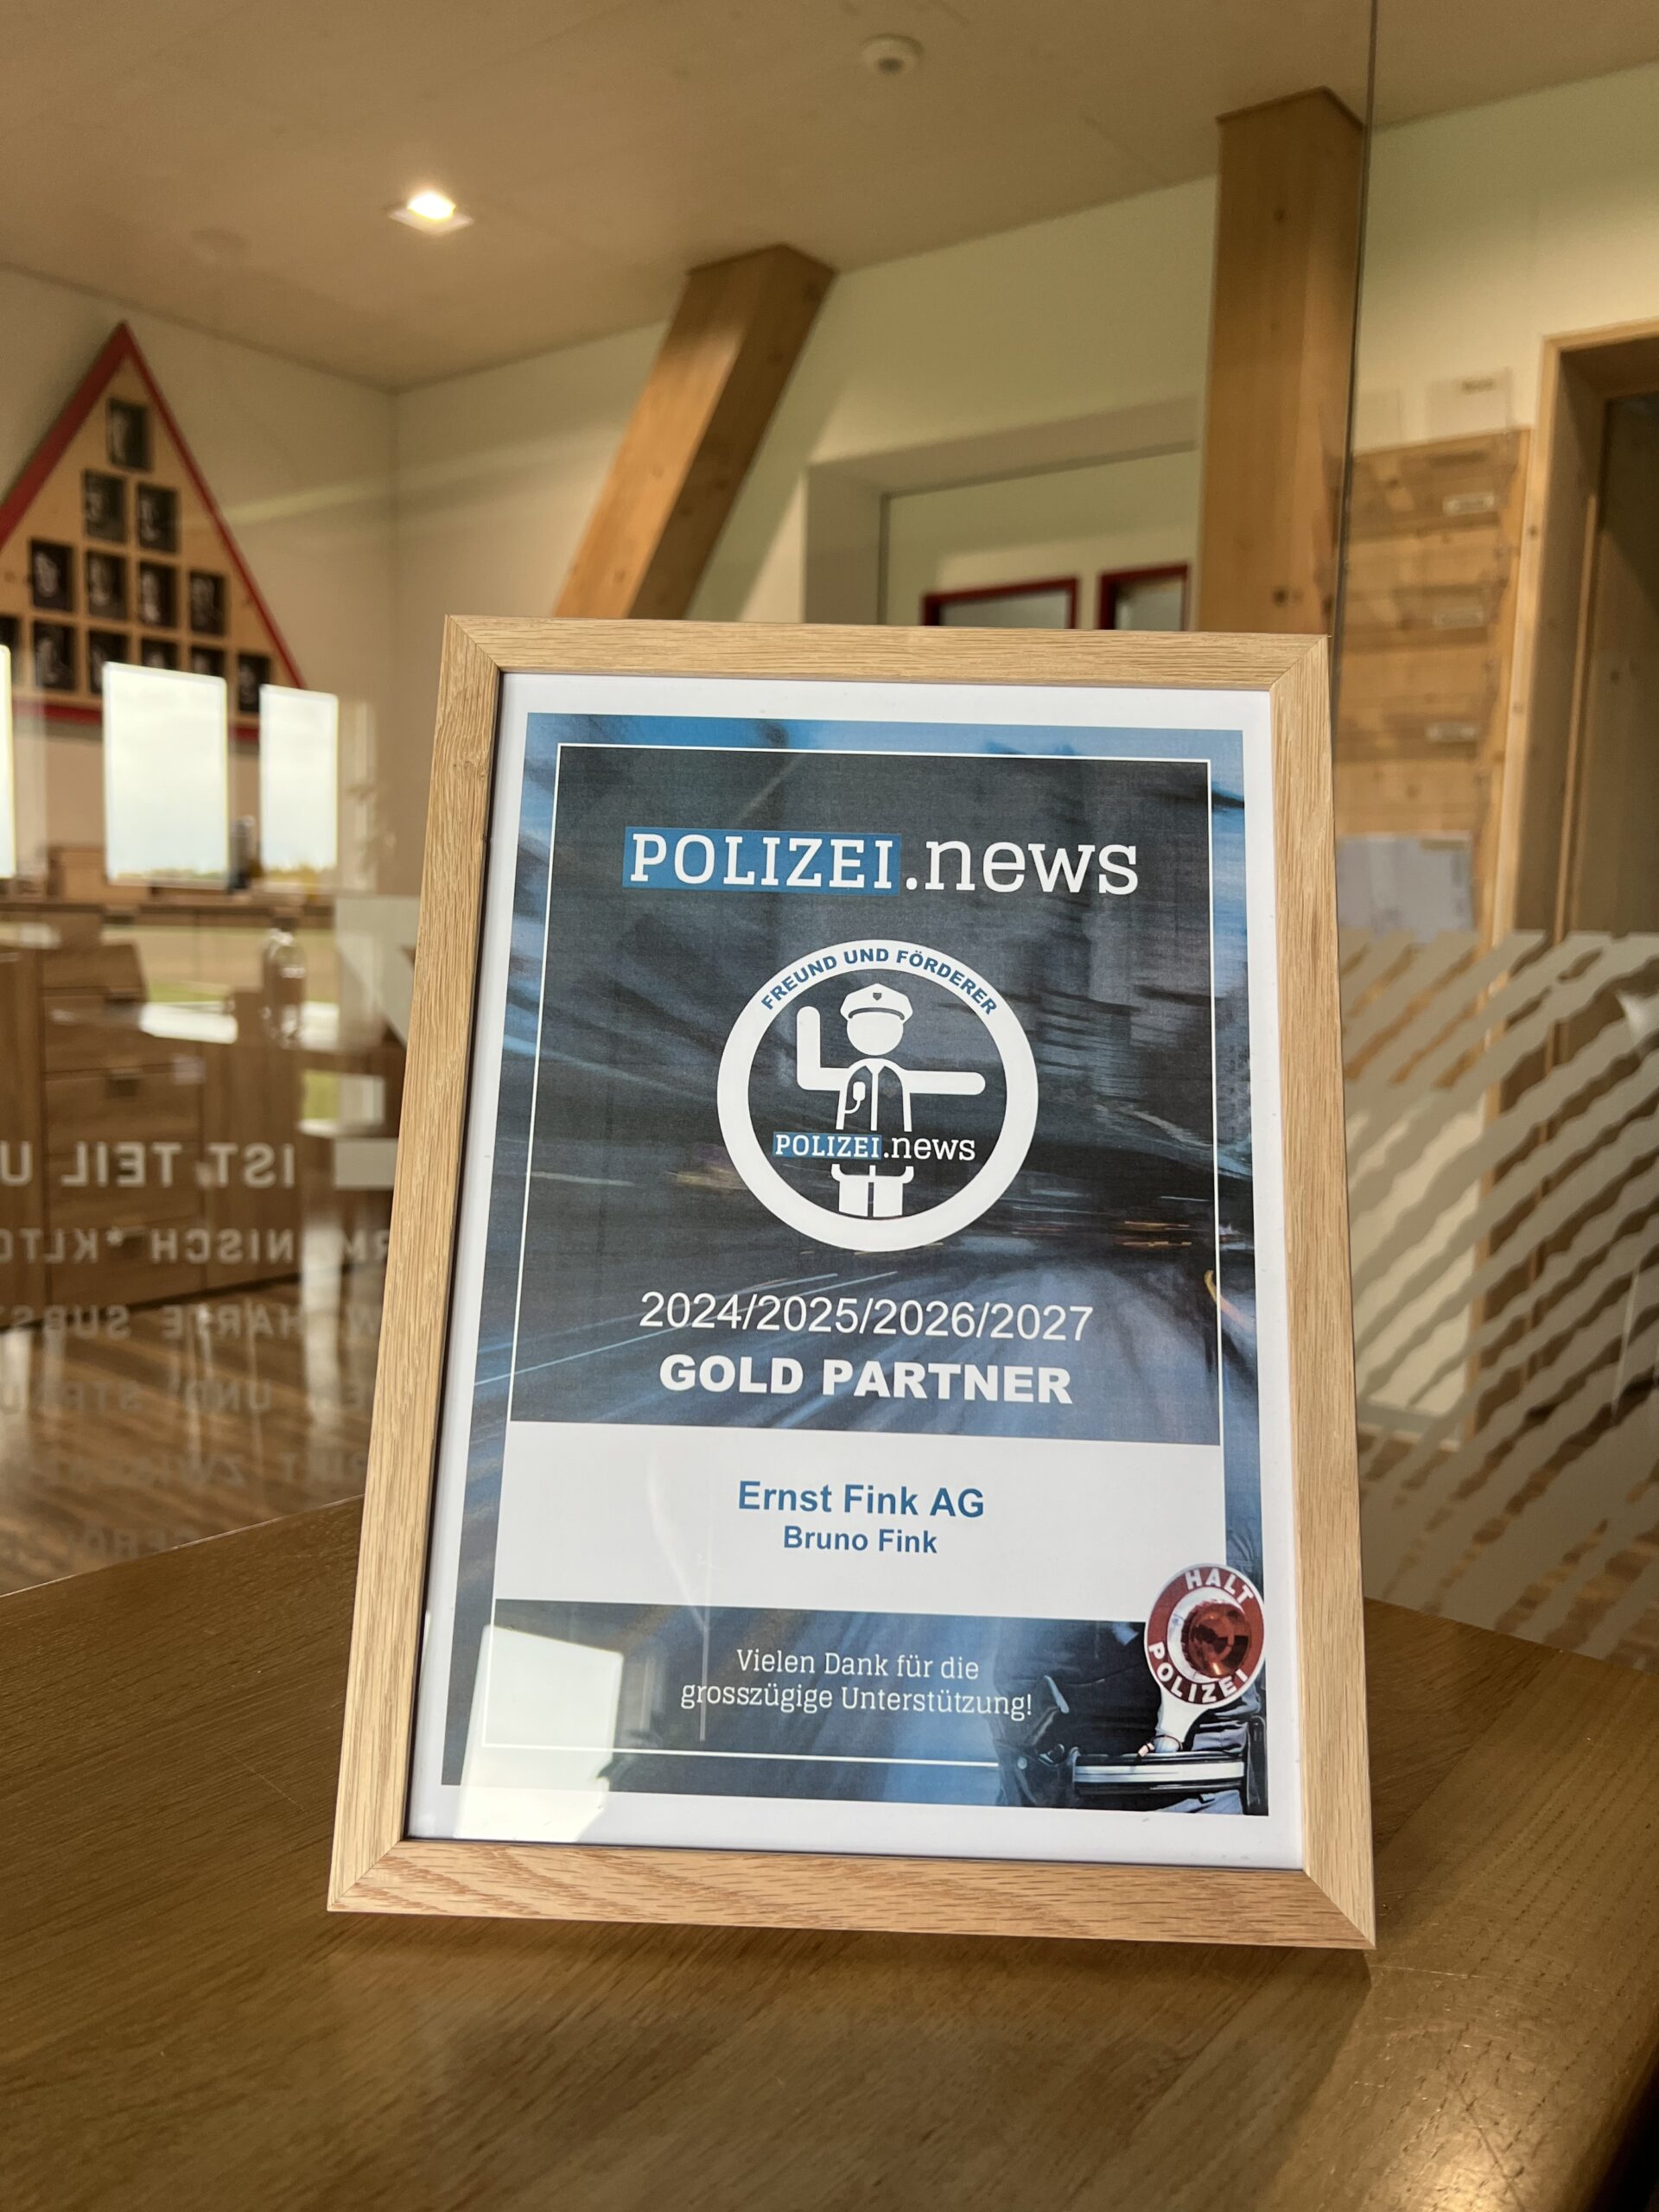 Die Ernst Fink AG ist Gold Partner von Polizei.news. (Bild: © Philipp Ochsner)